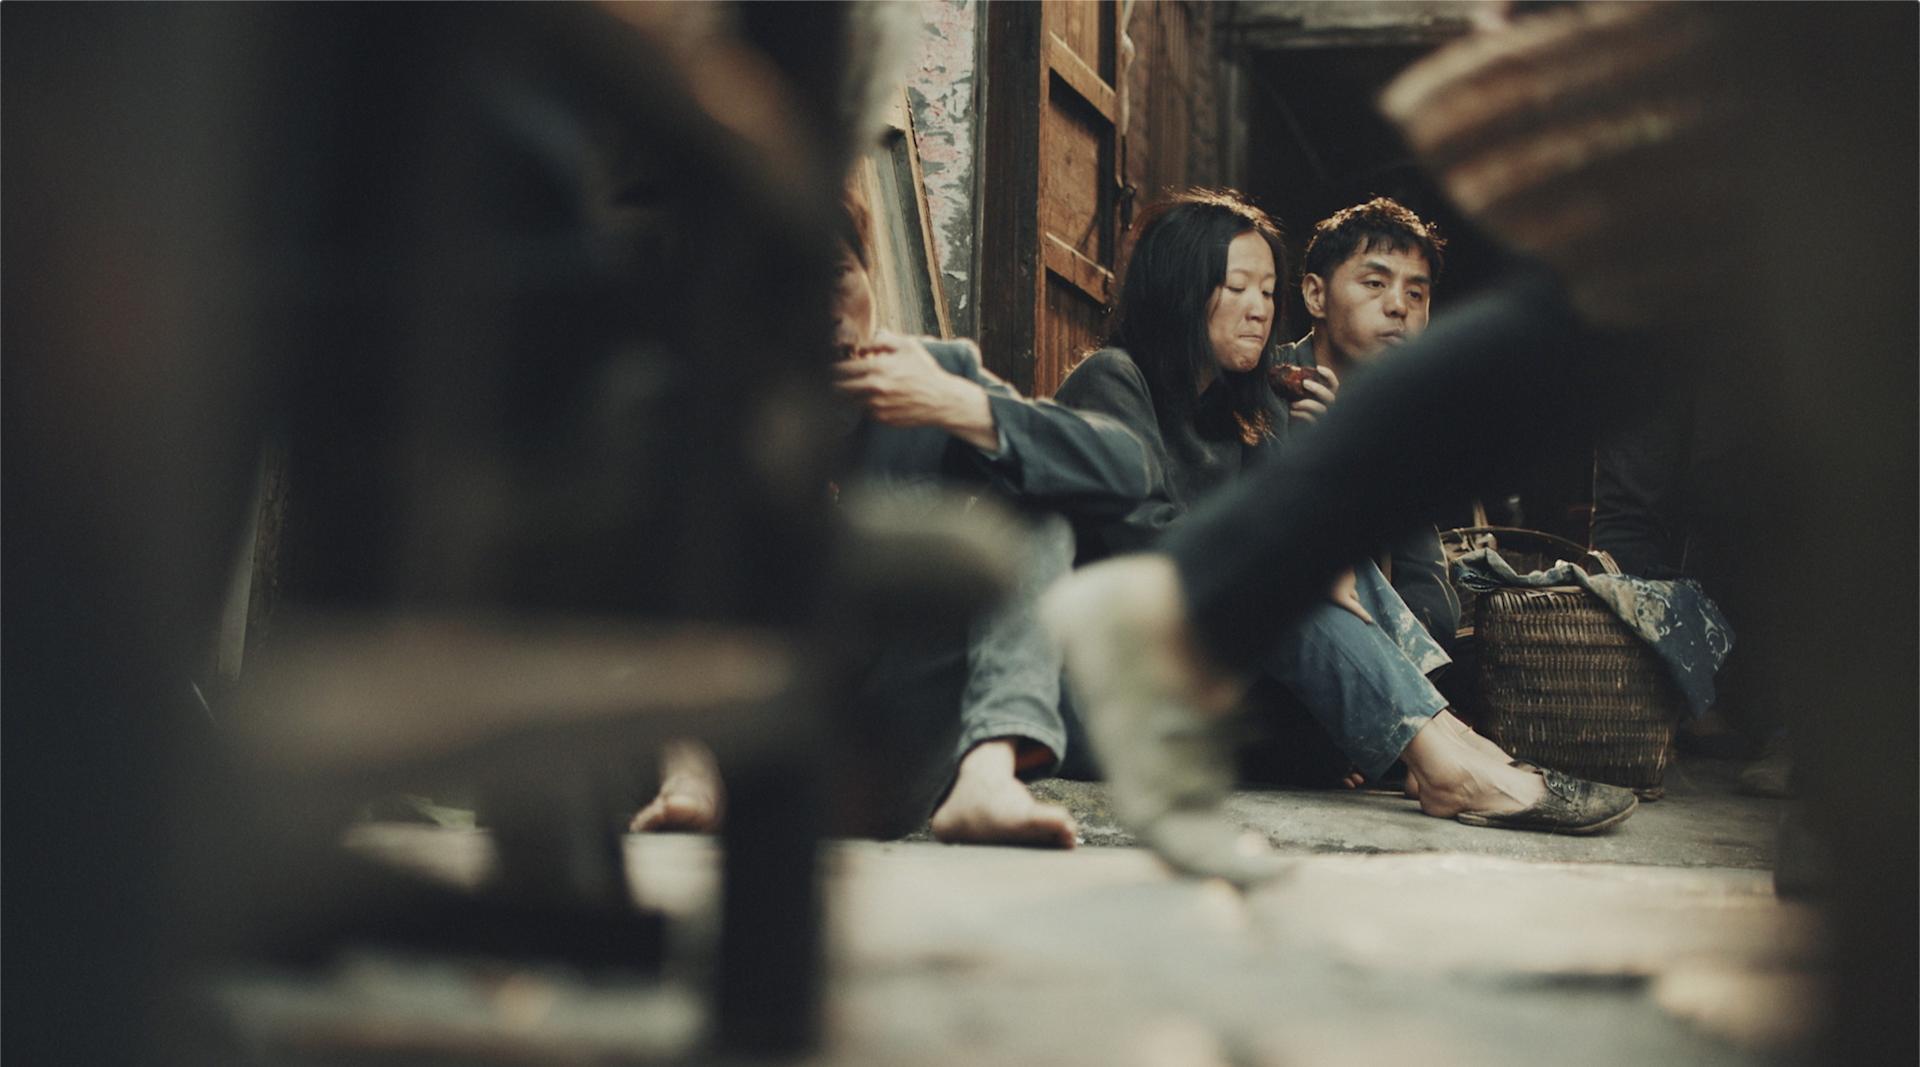 湖南卫视 建国70周年 公益宣传片《青春的半径》 2分钟 导演版